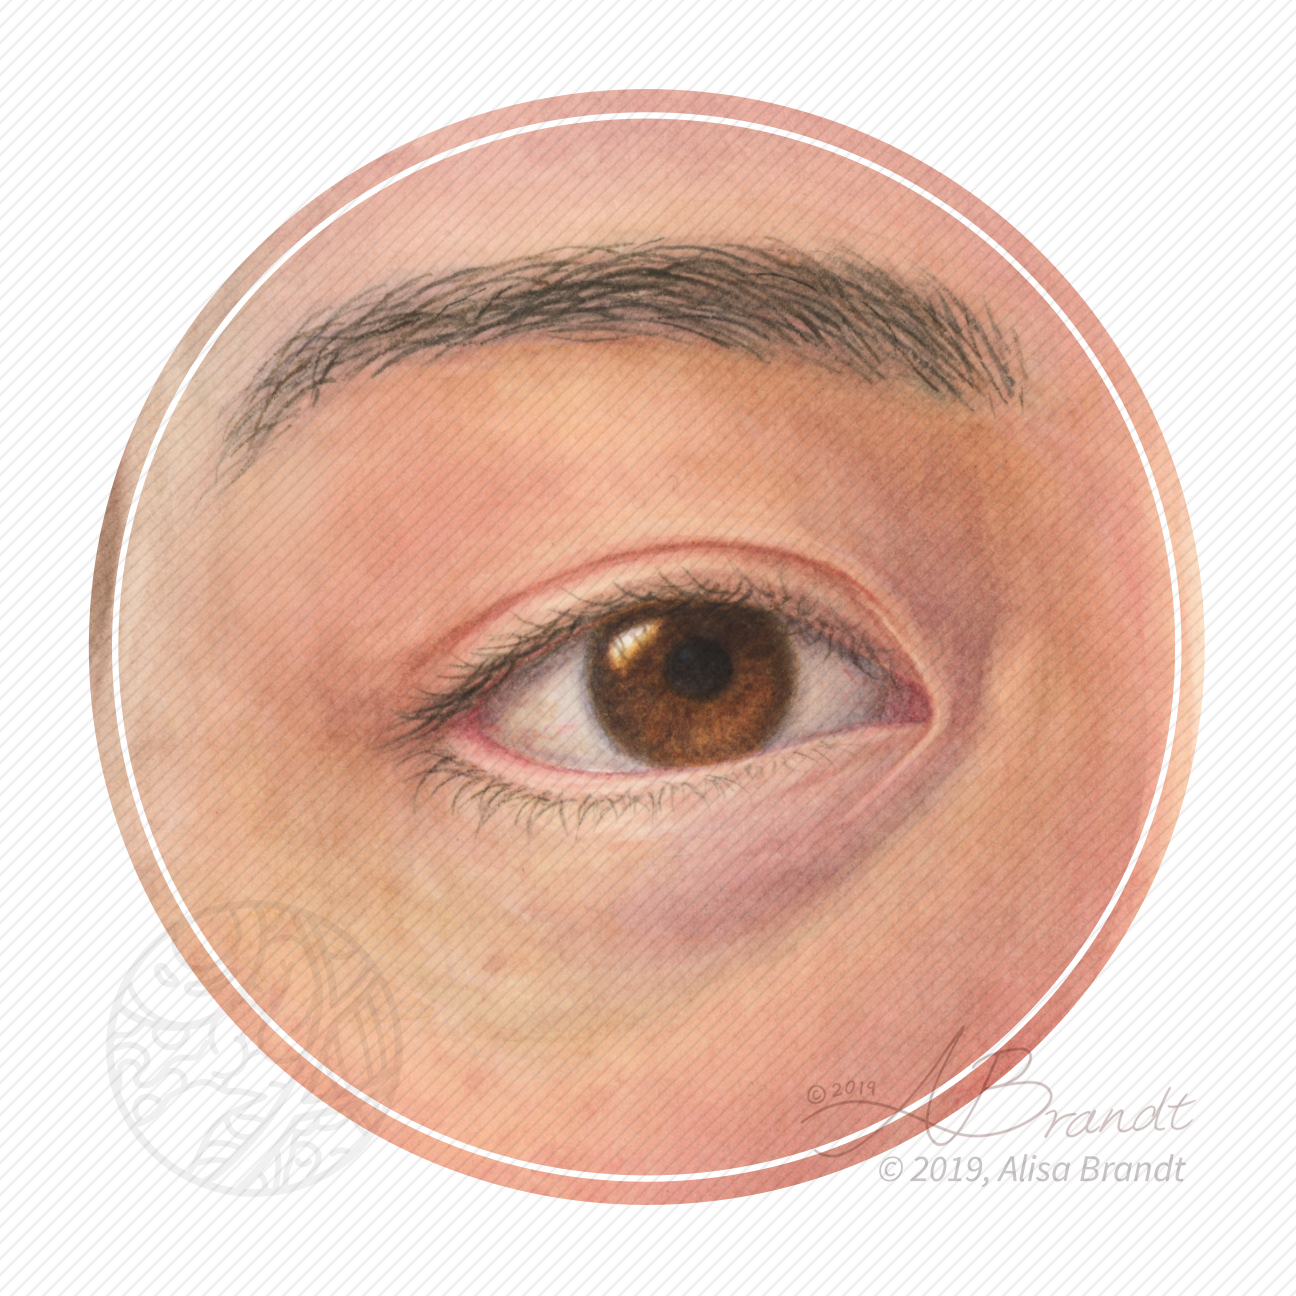 External eye in watercolor © 2019 Alisa Brandt